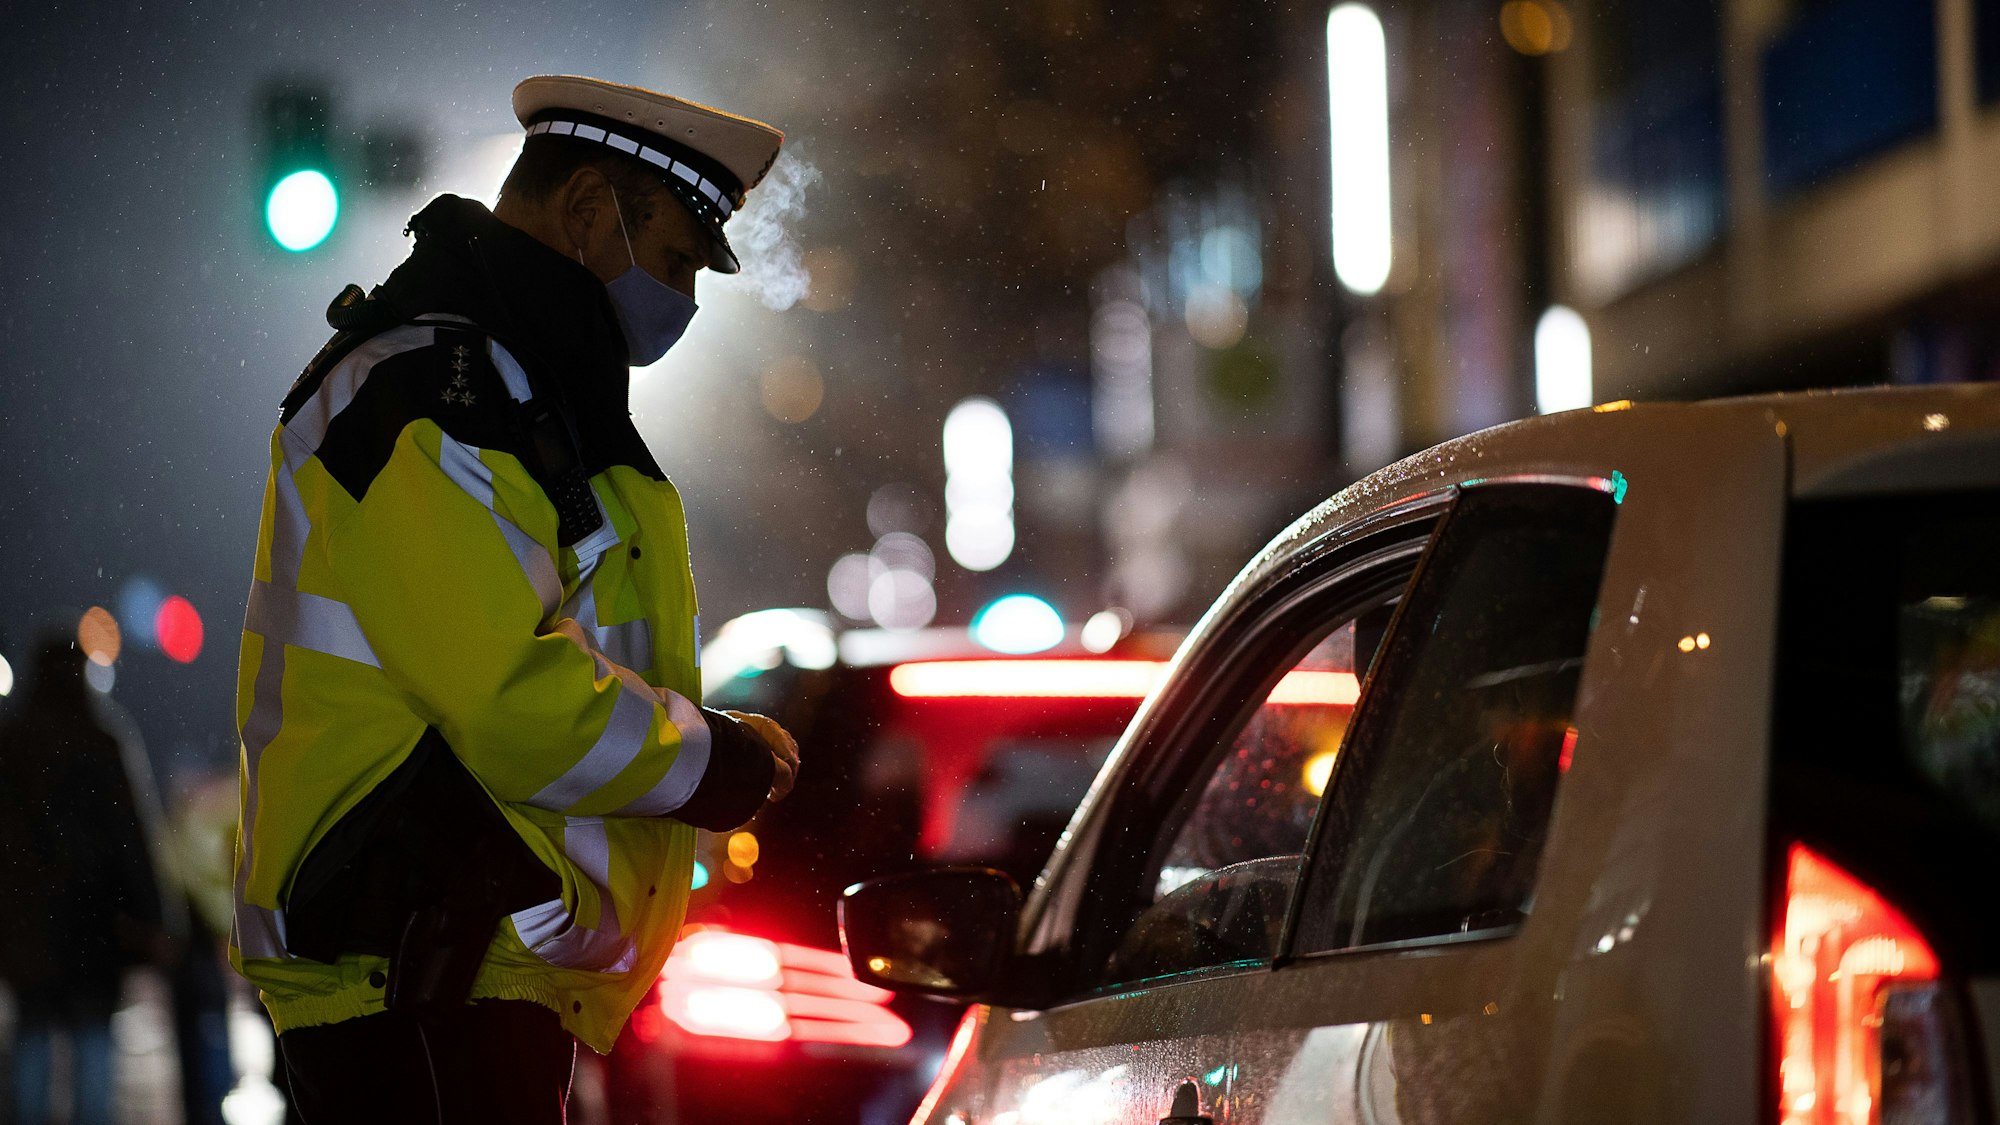 Das Symbolbild zeigt einen Polizeibeamten, der während einer Verkehrskontrolle mit einem Autofahrer spricht.